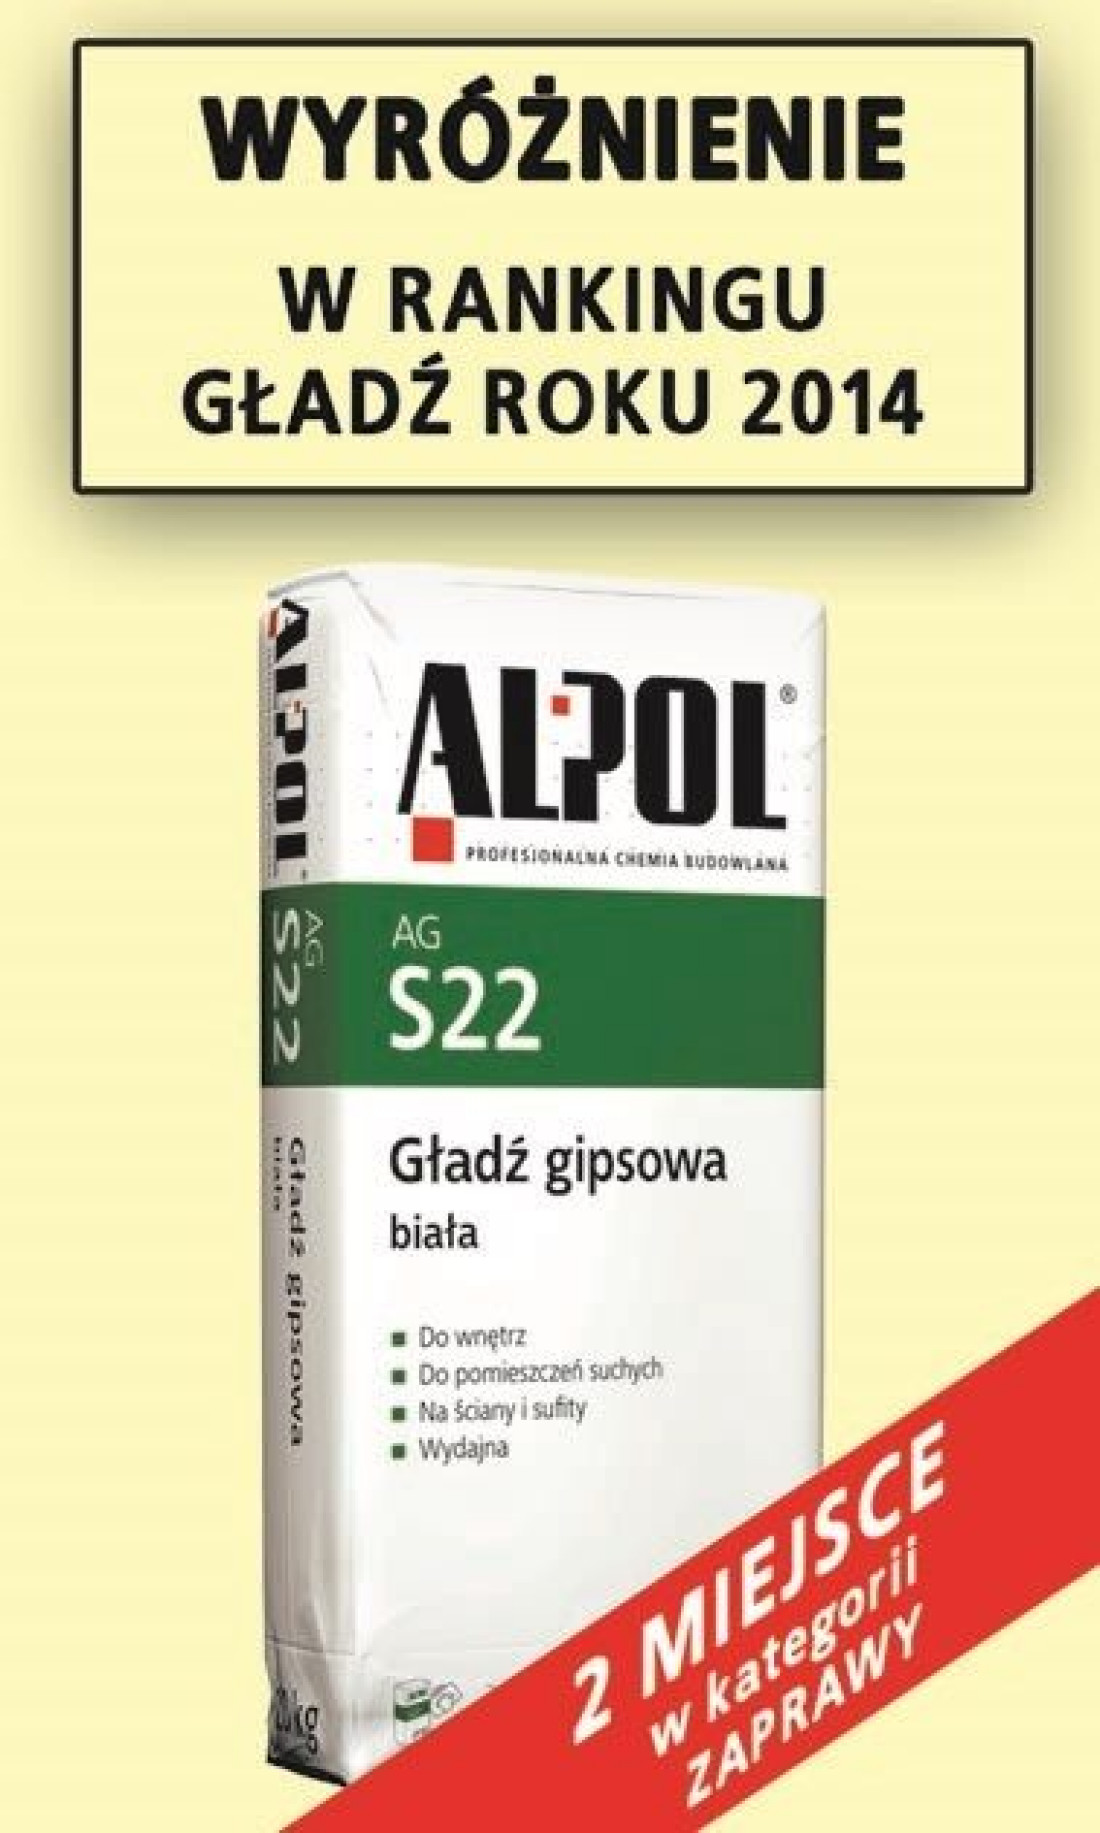 Firma ALPOL otrzymała WYRÓŻNIENIE w rankingu Gładź roku 2014